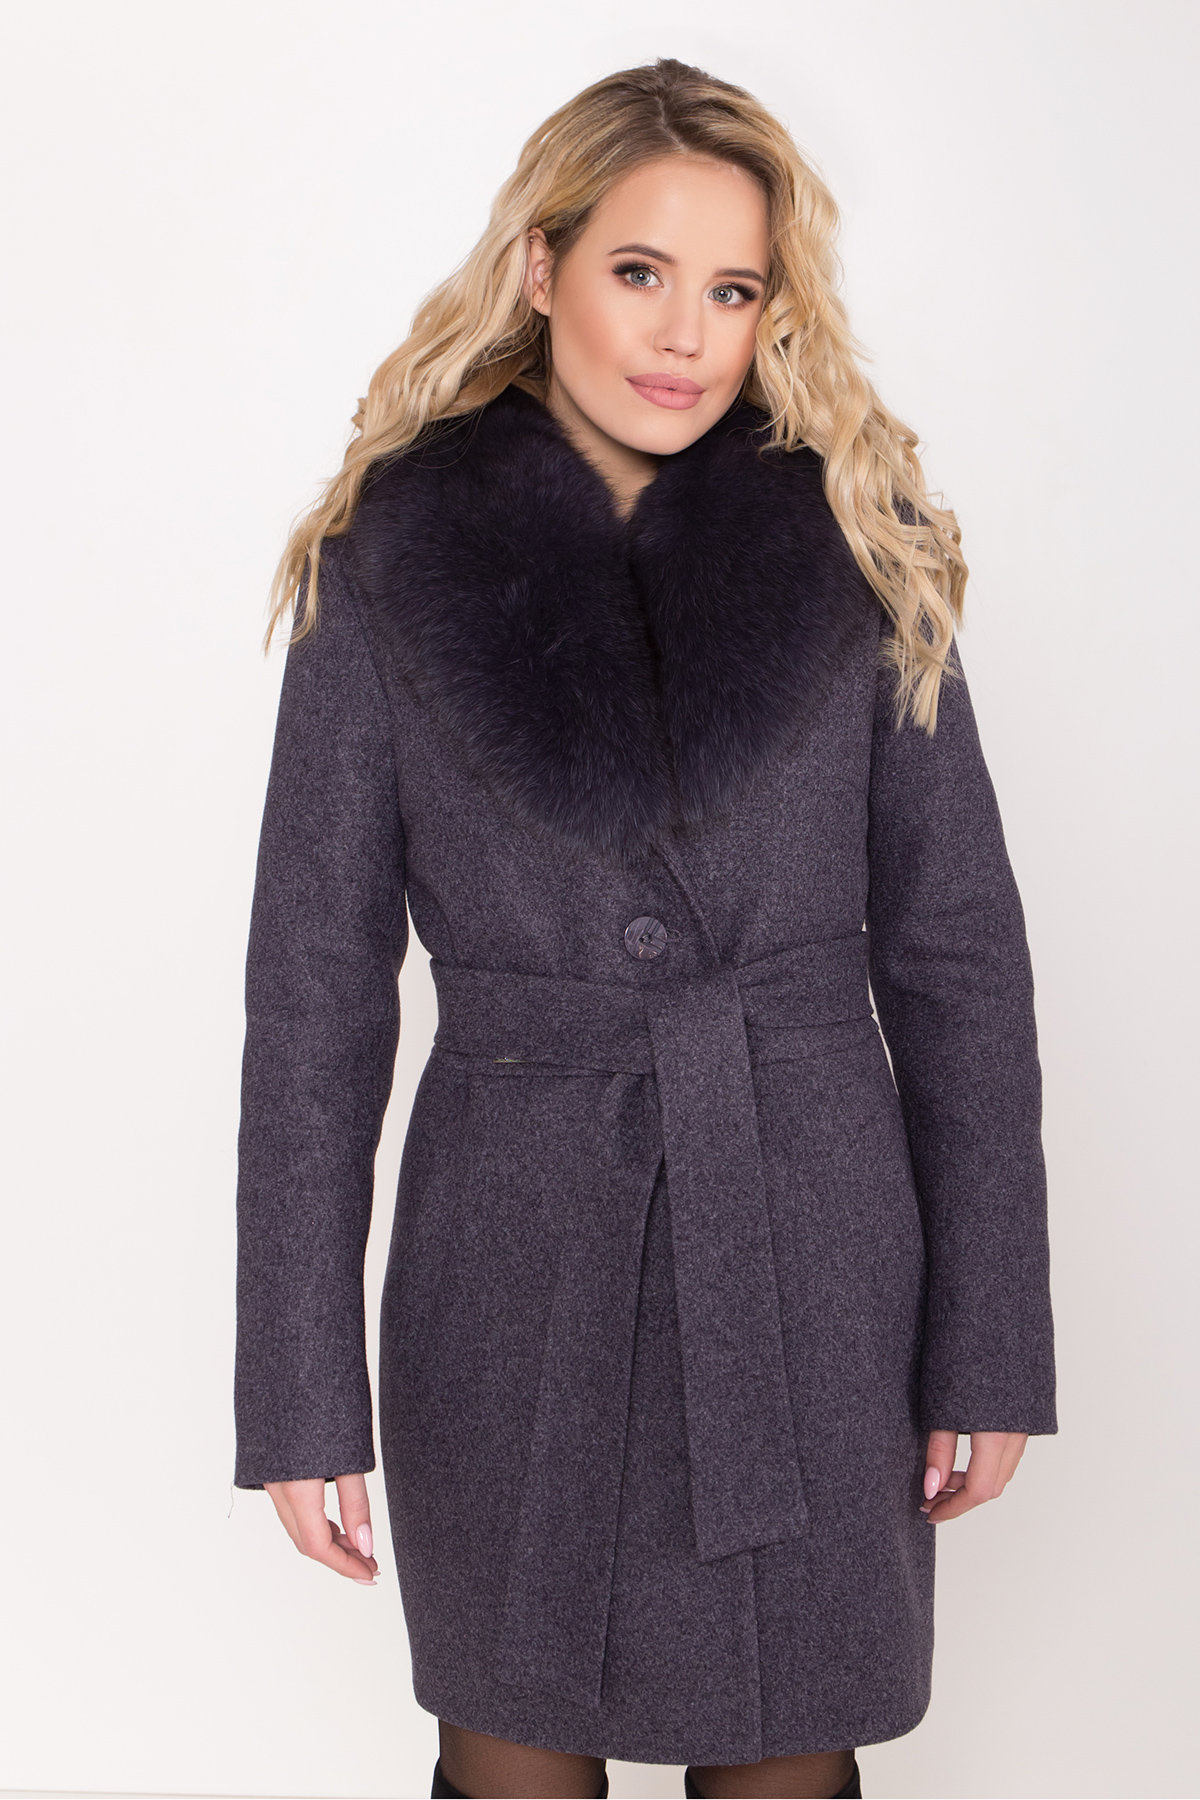 Зимнее пальто с натуральным меховым воротником Габриэлла 8214 АРТ. 44229 Цвет: Т.синий 543 - фото 5, интернет магазин tm-modus.ru